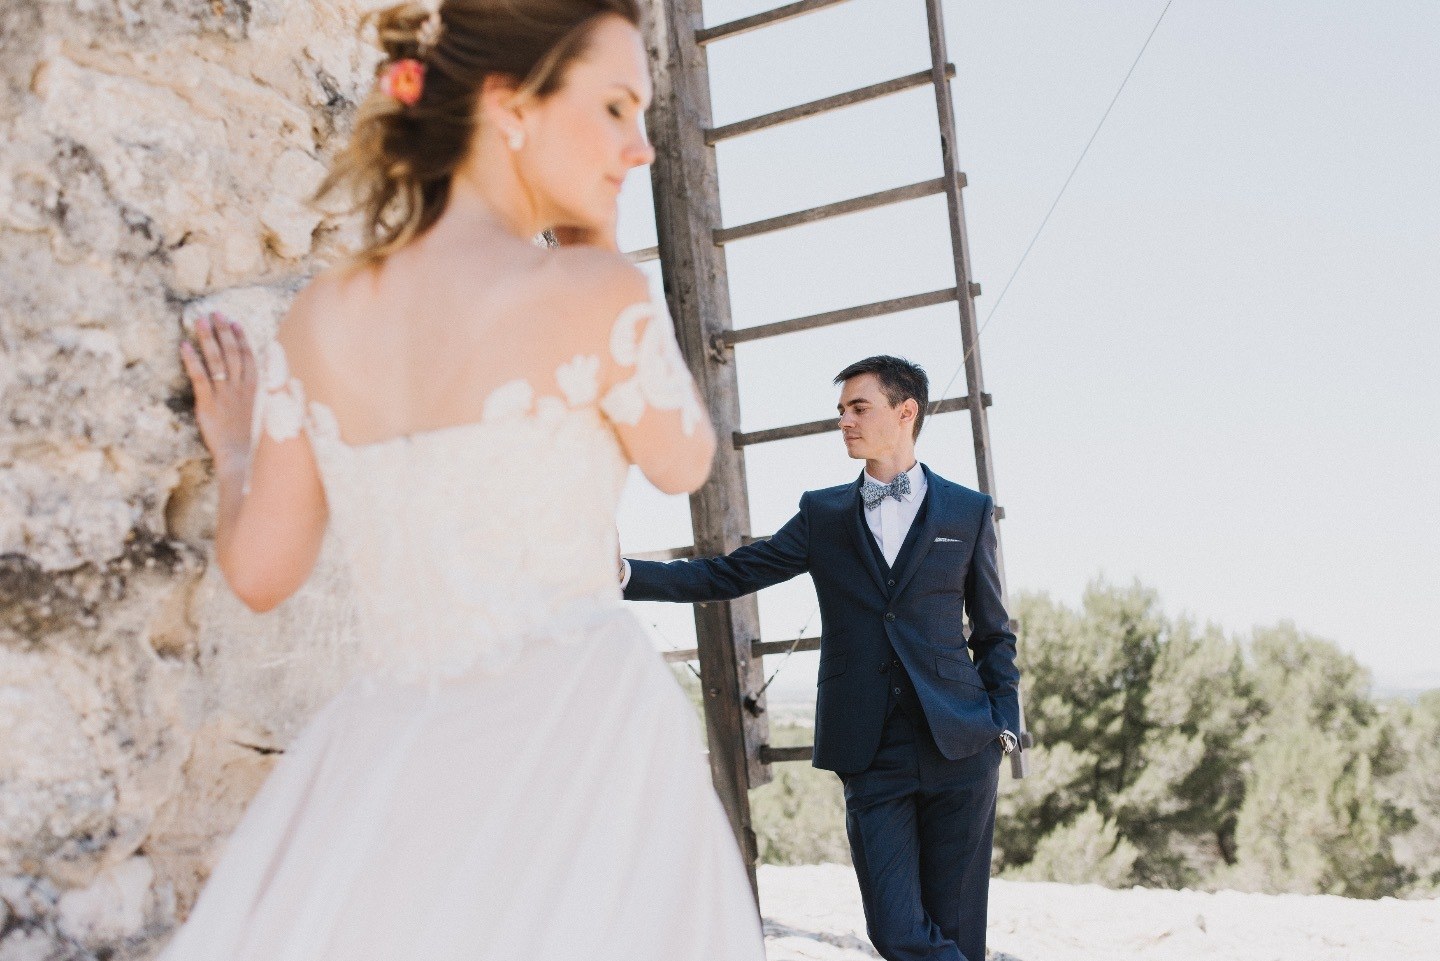 Элегантная и утонченная свадьба в Провансе